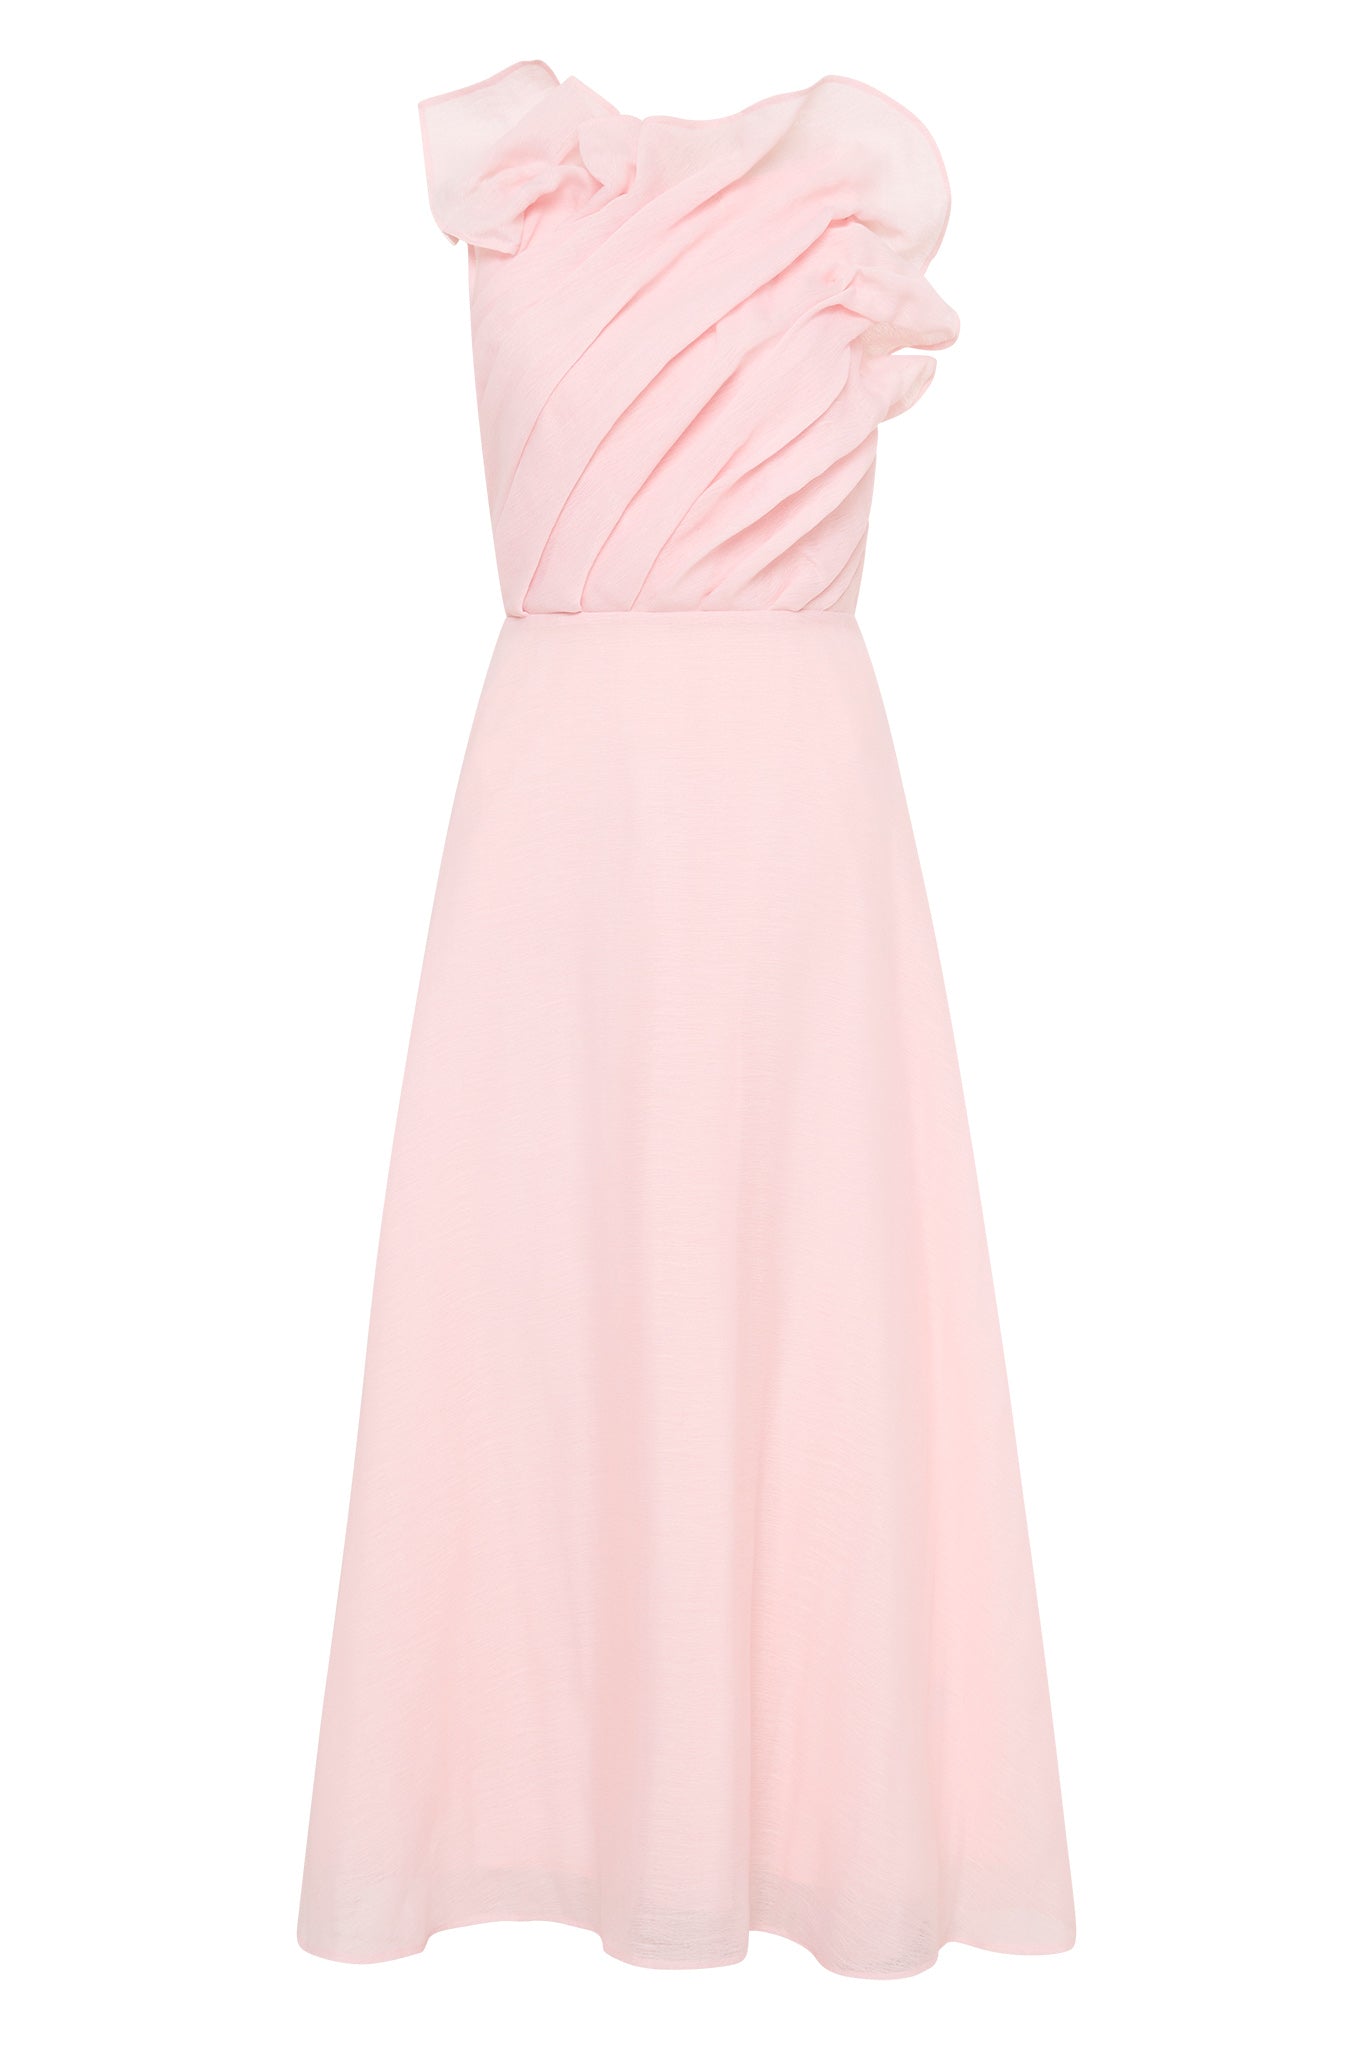 Genesis Midi Dress, Soft Pink